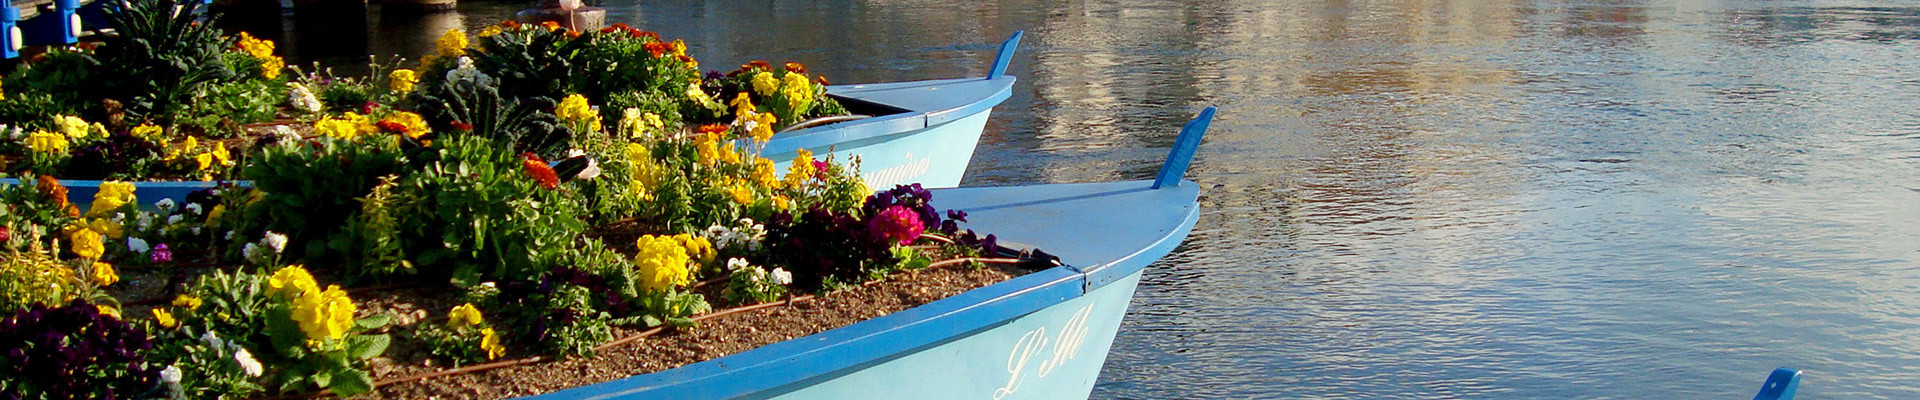 The three Martigues boats